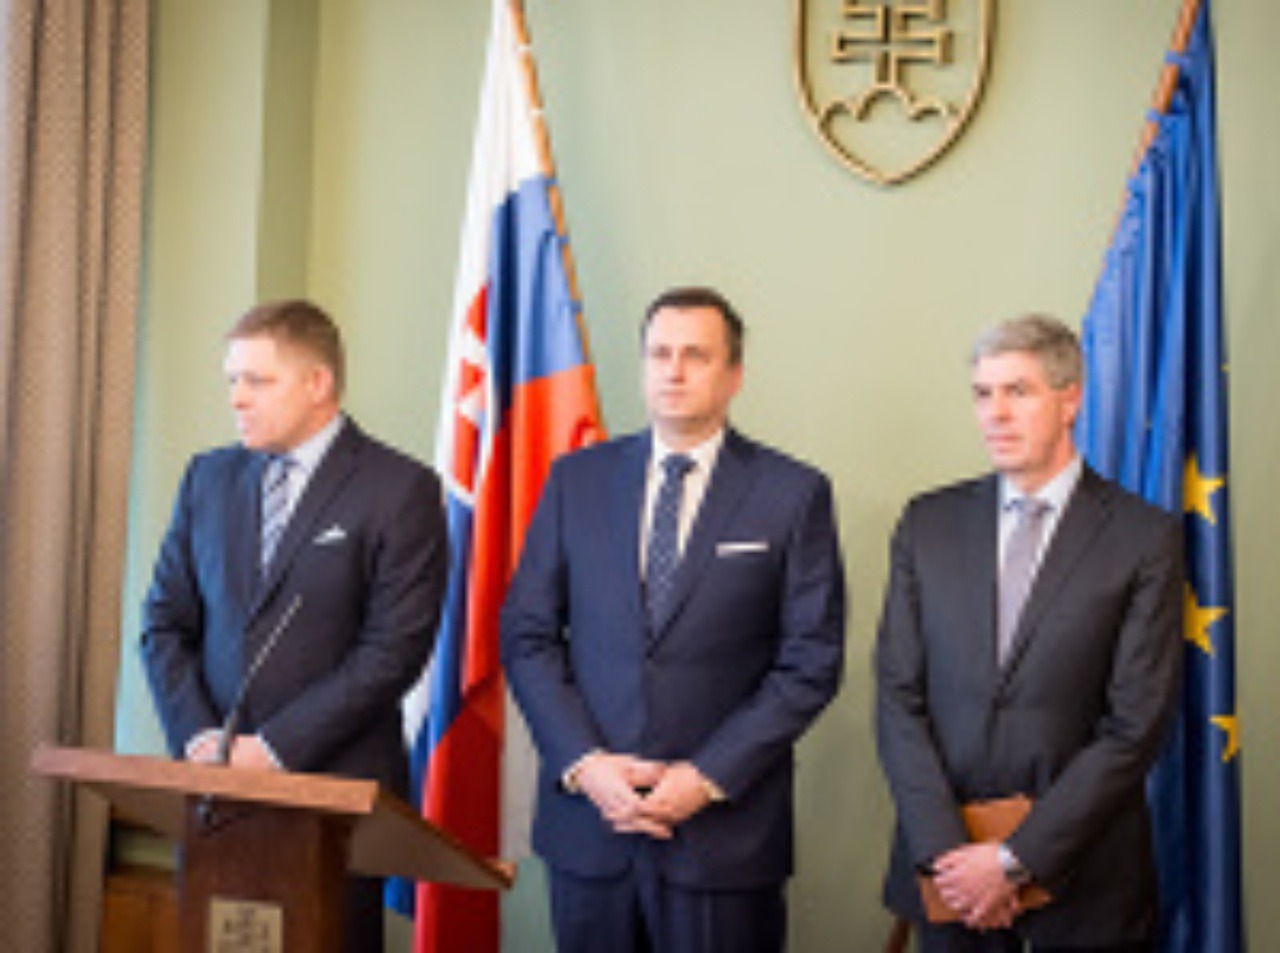 Zľava: Predseda vlády SR Robert Fico, predseda NR SR Andrej Danko a podpredseda NR SR Béla Bugár.